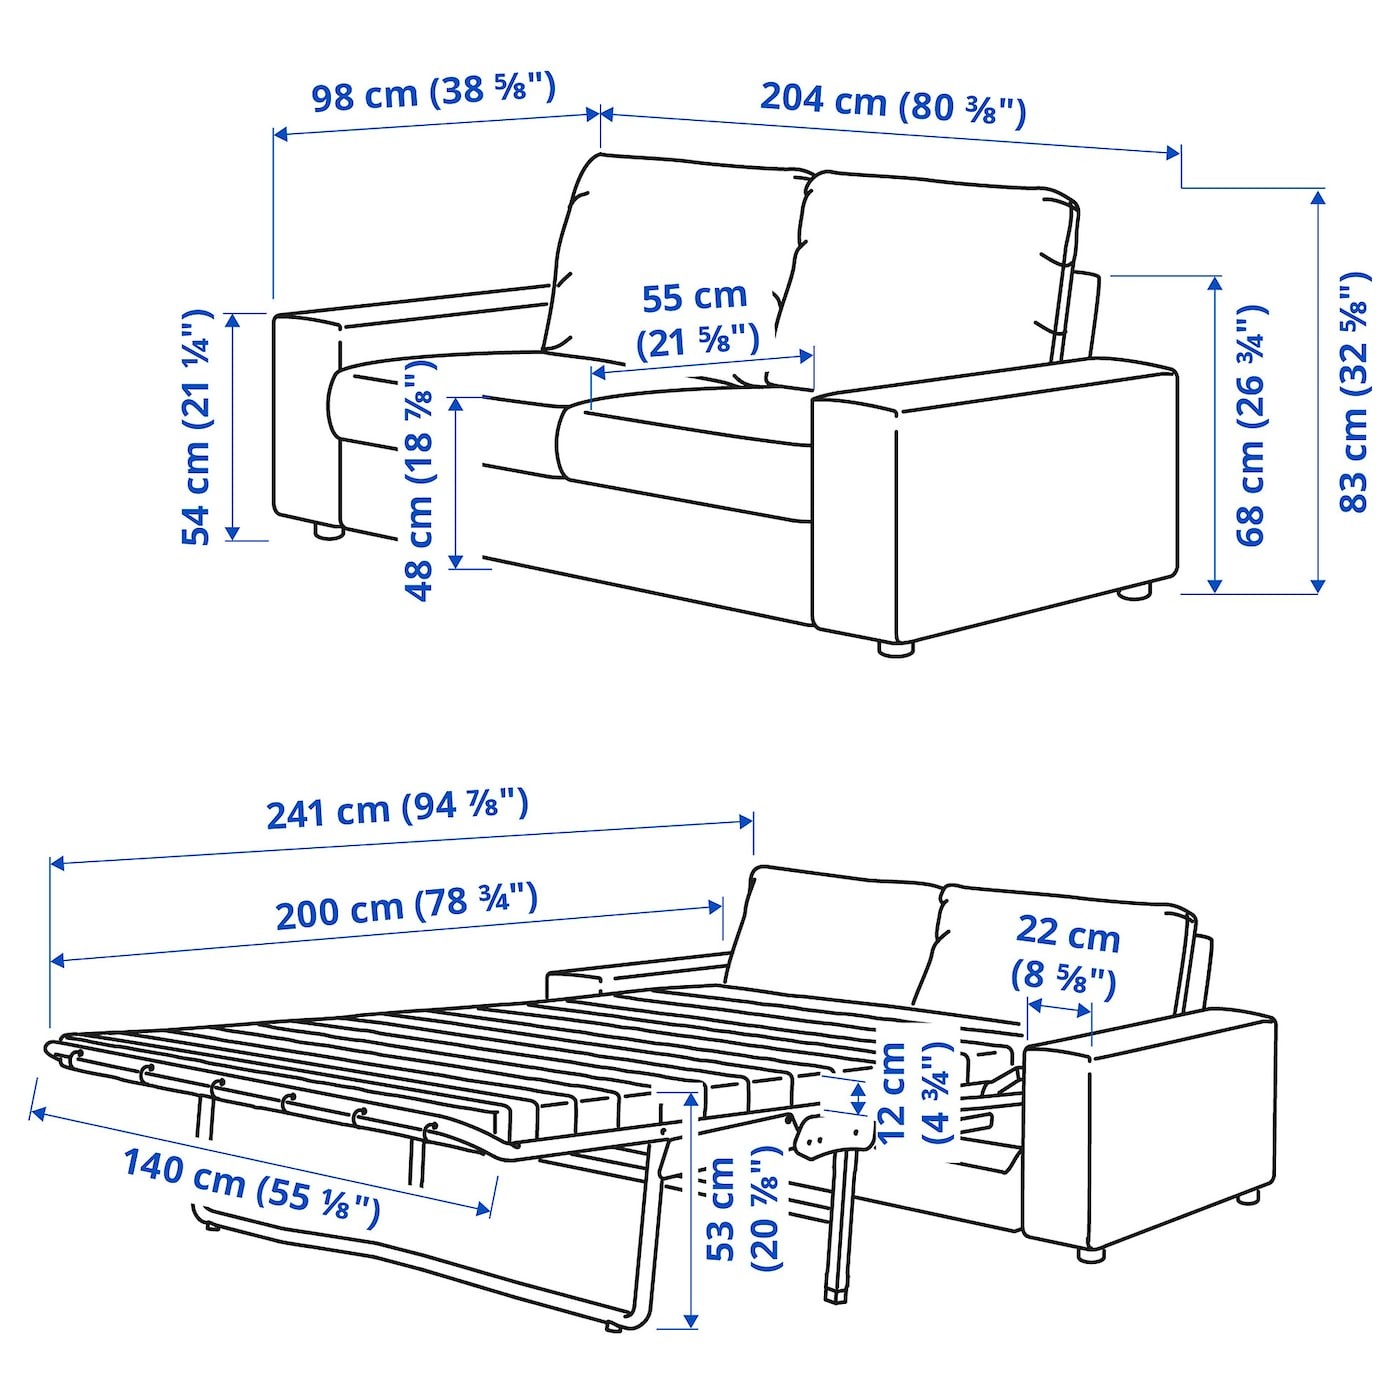 VIMLE 2-seat sofa-bed